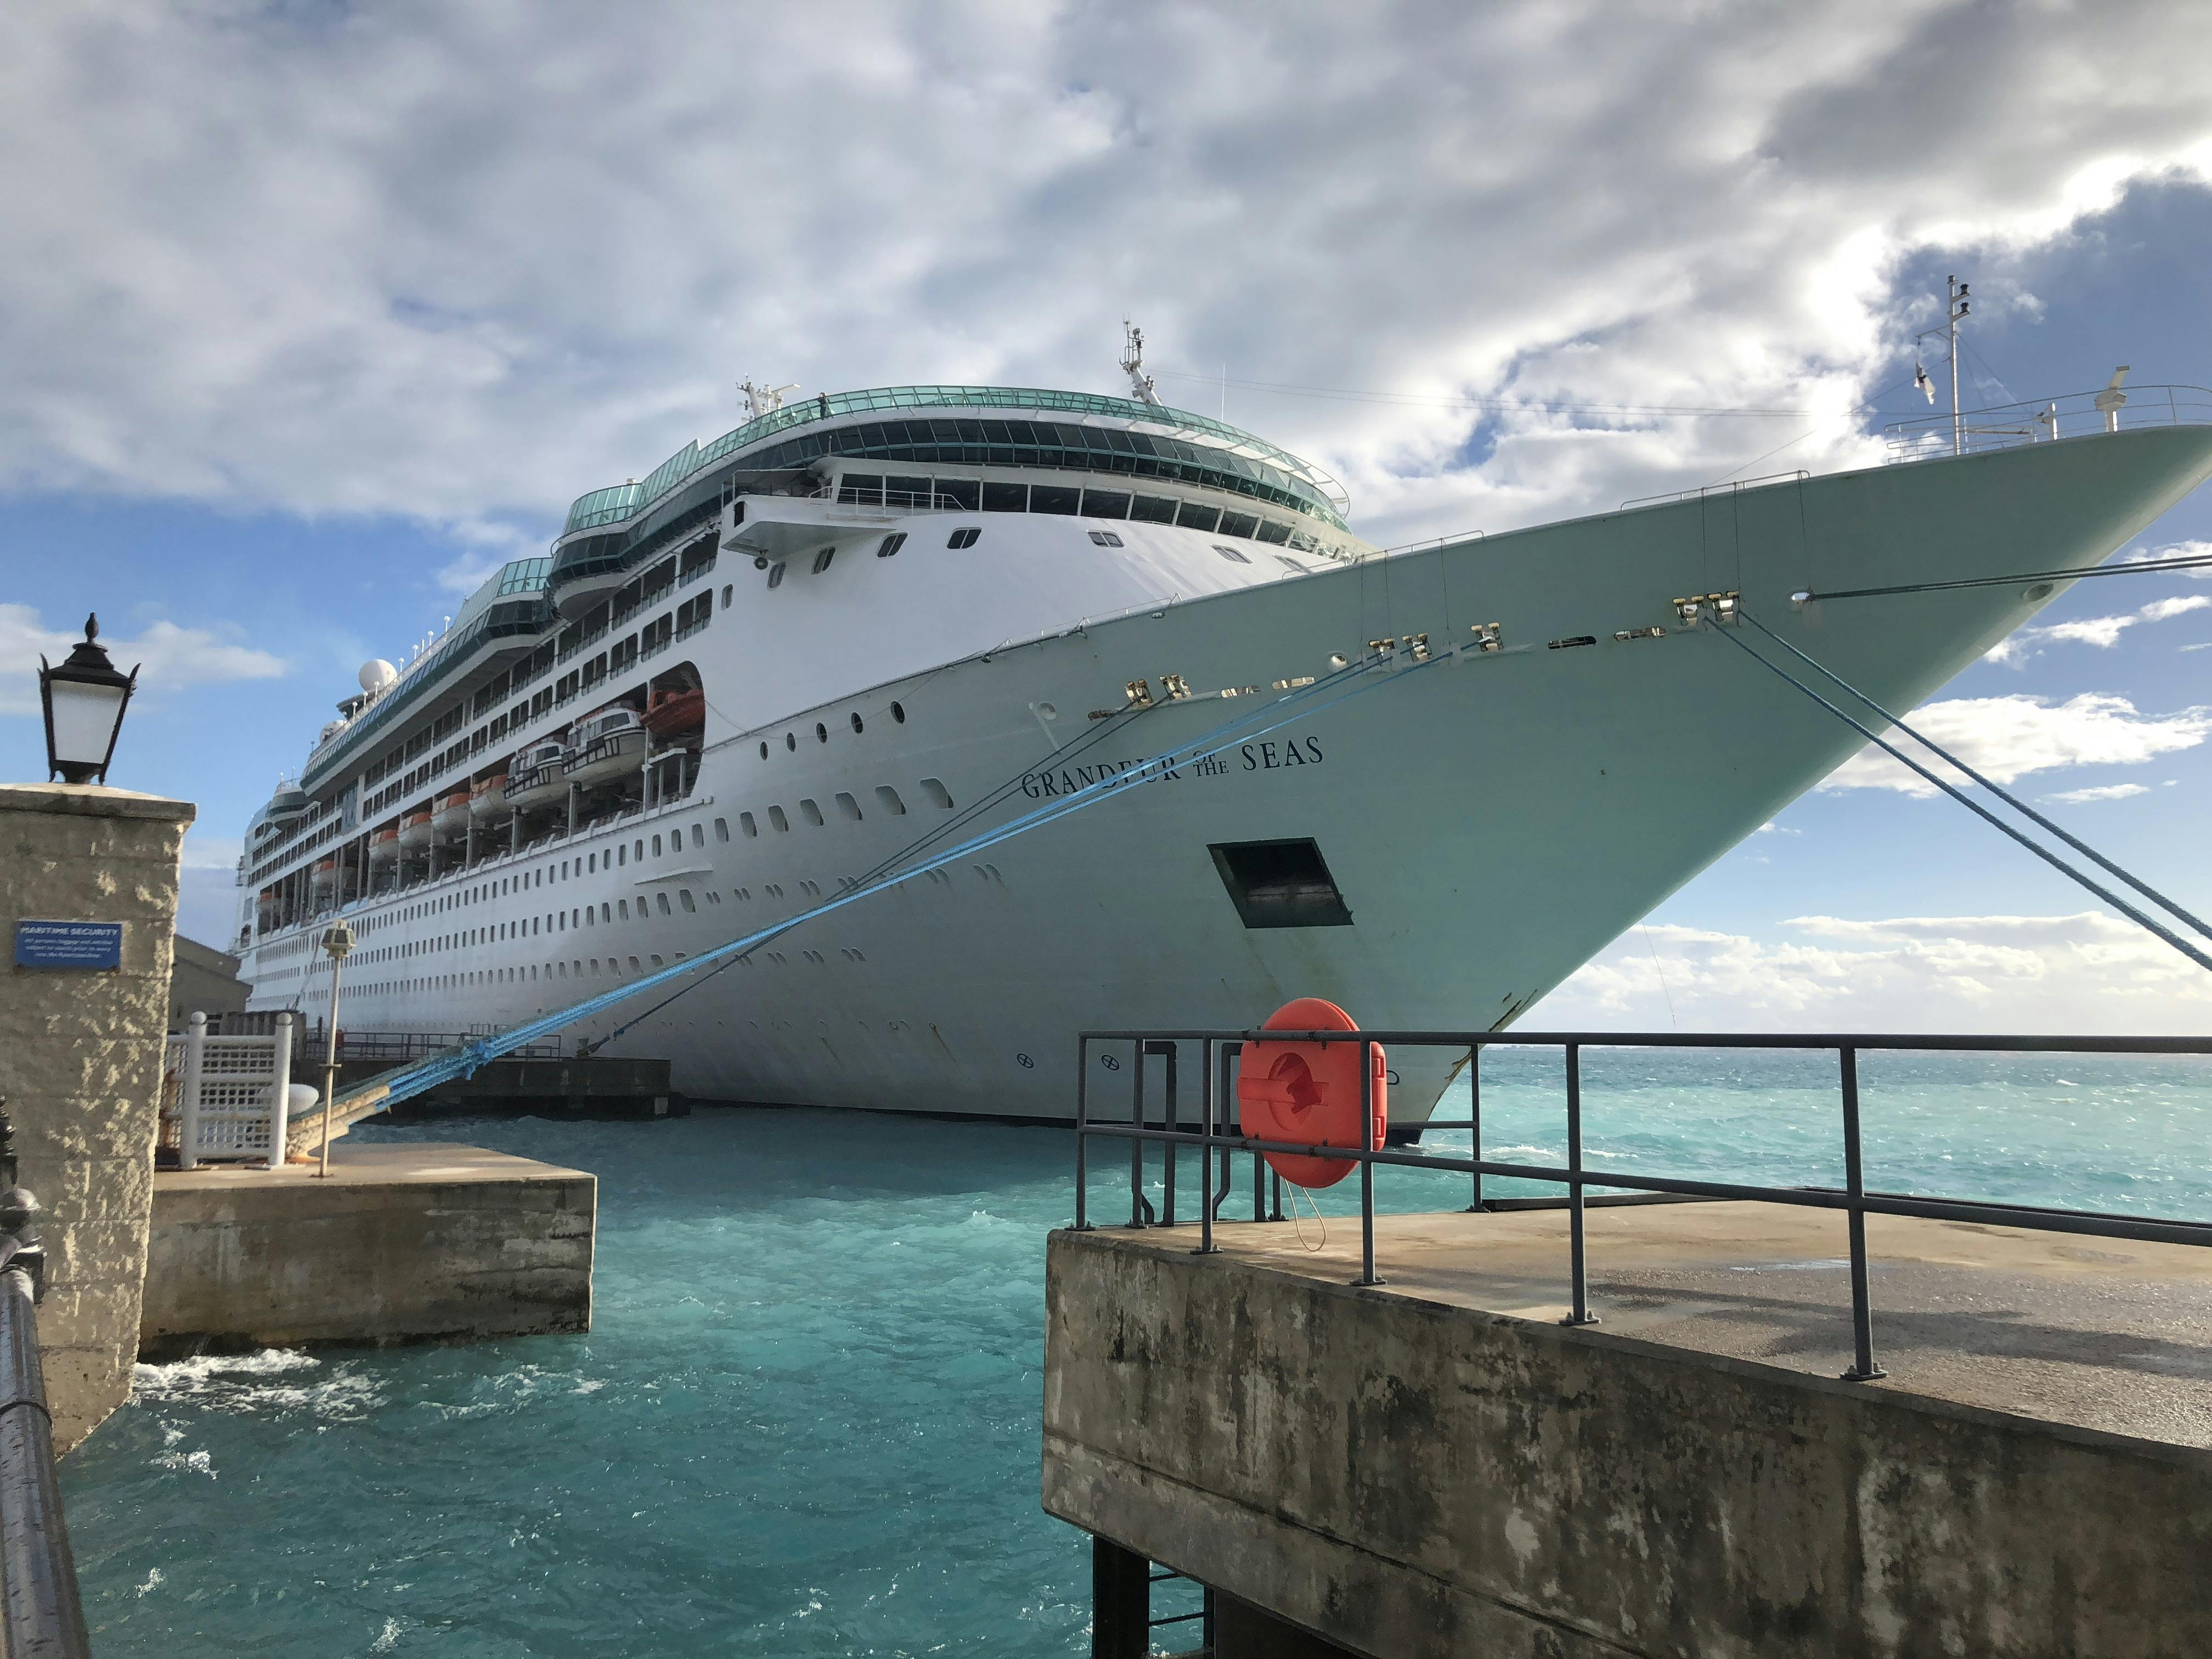 Grandeur of the Seas Cruise Review by GrandpaK - October 20, 2018